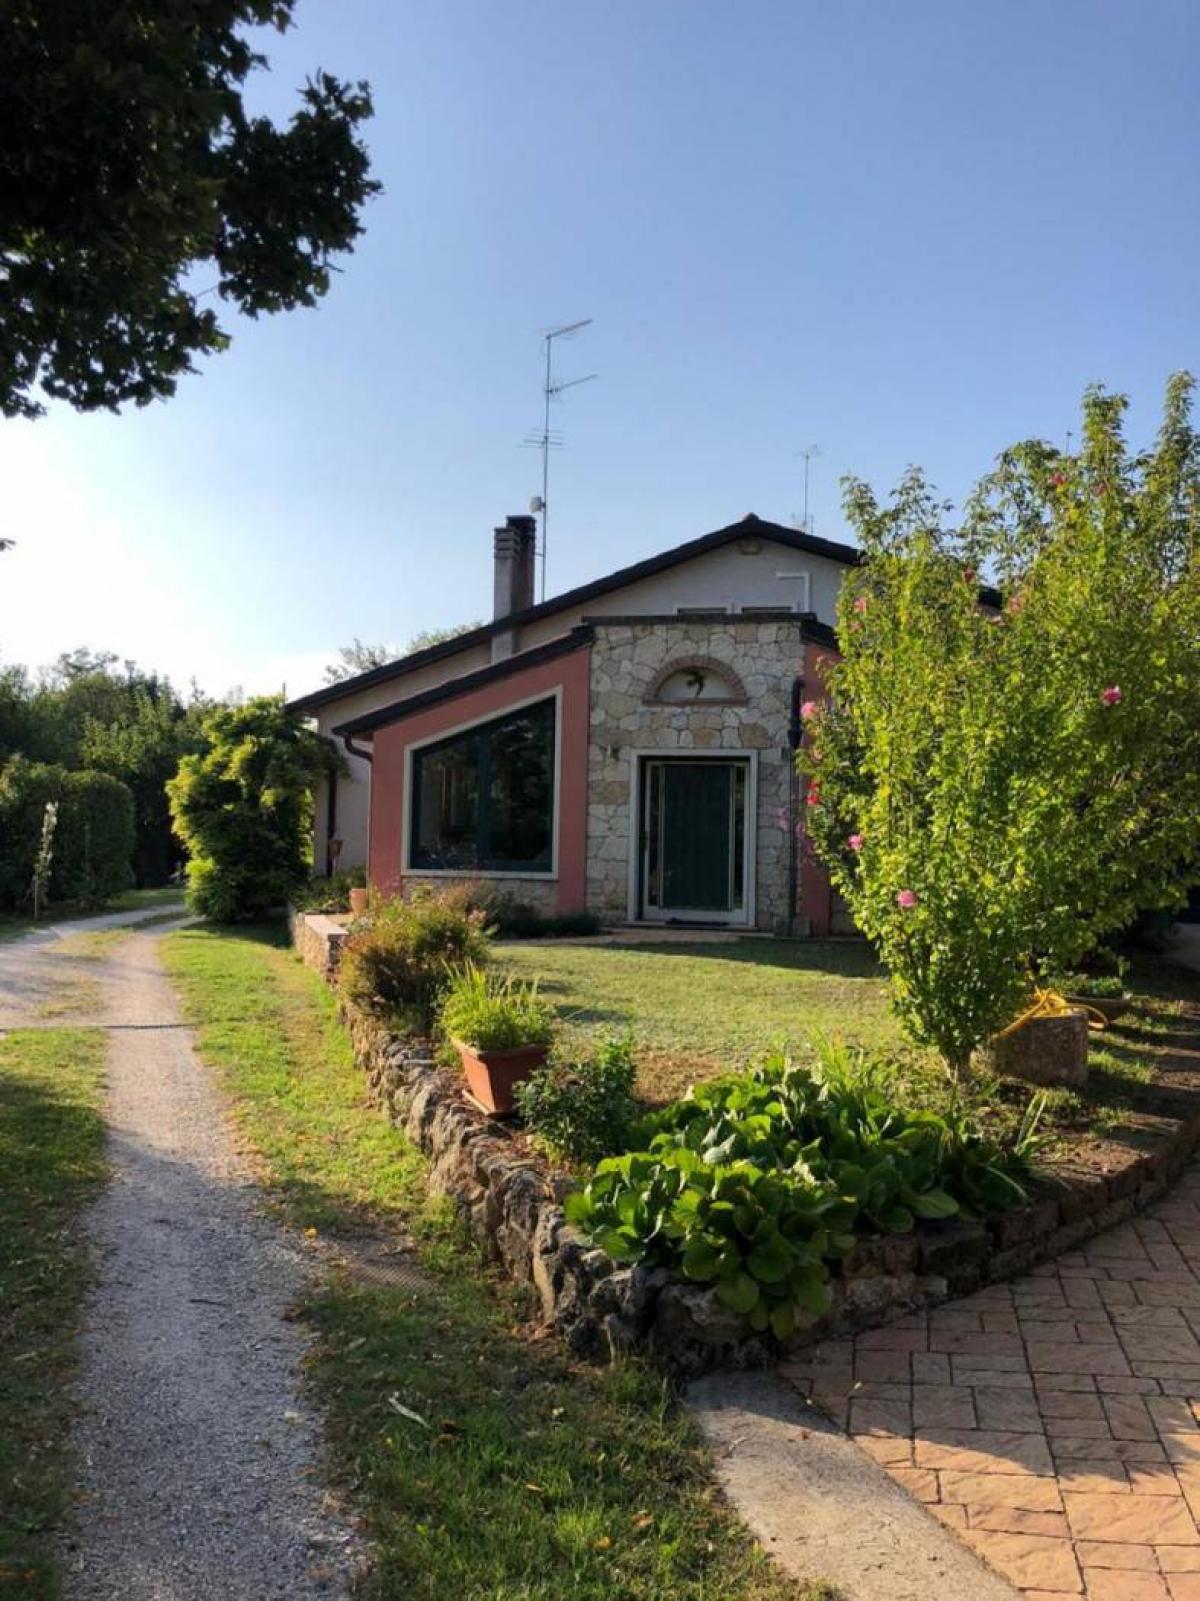 Picture of Home For Sale in Villaga, Veneto, Italy